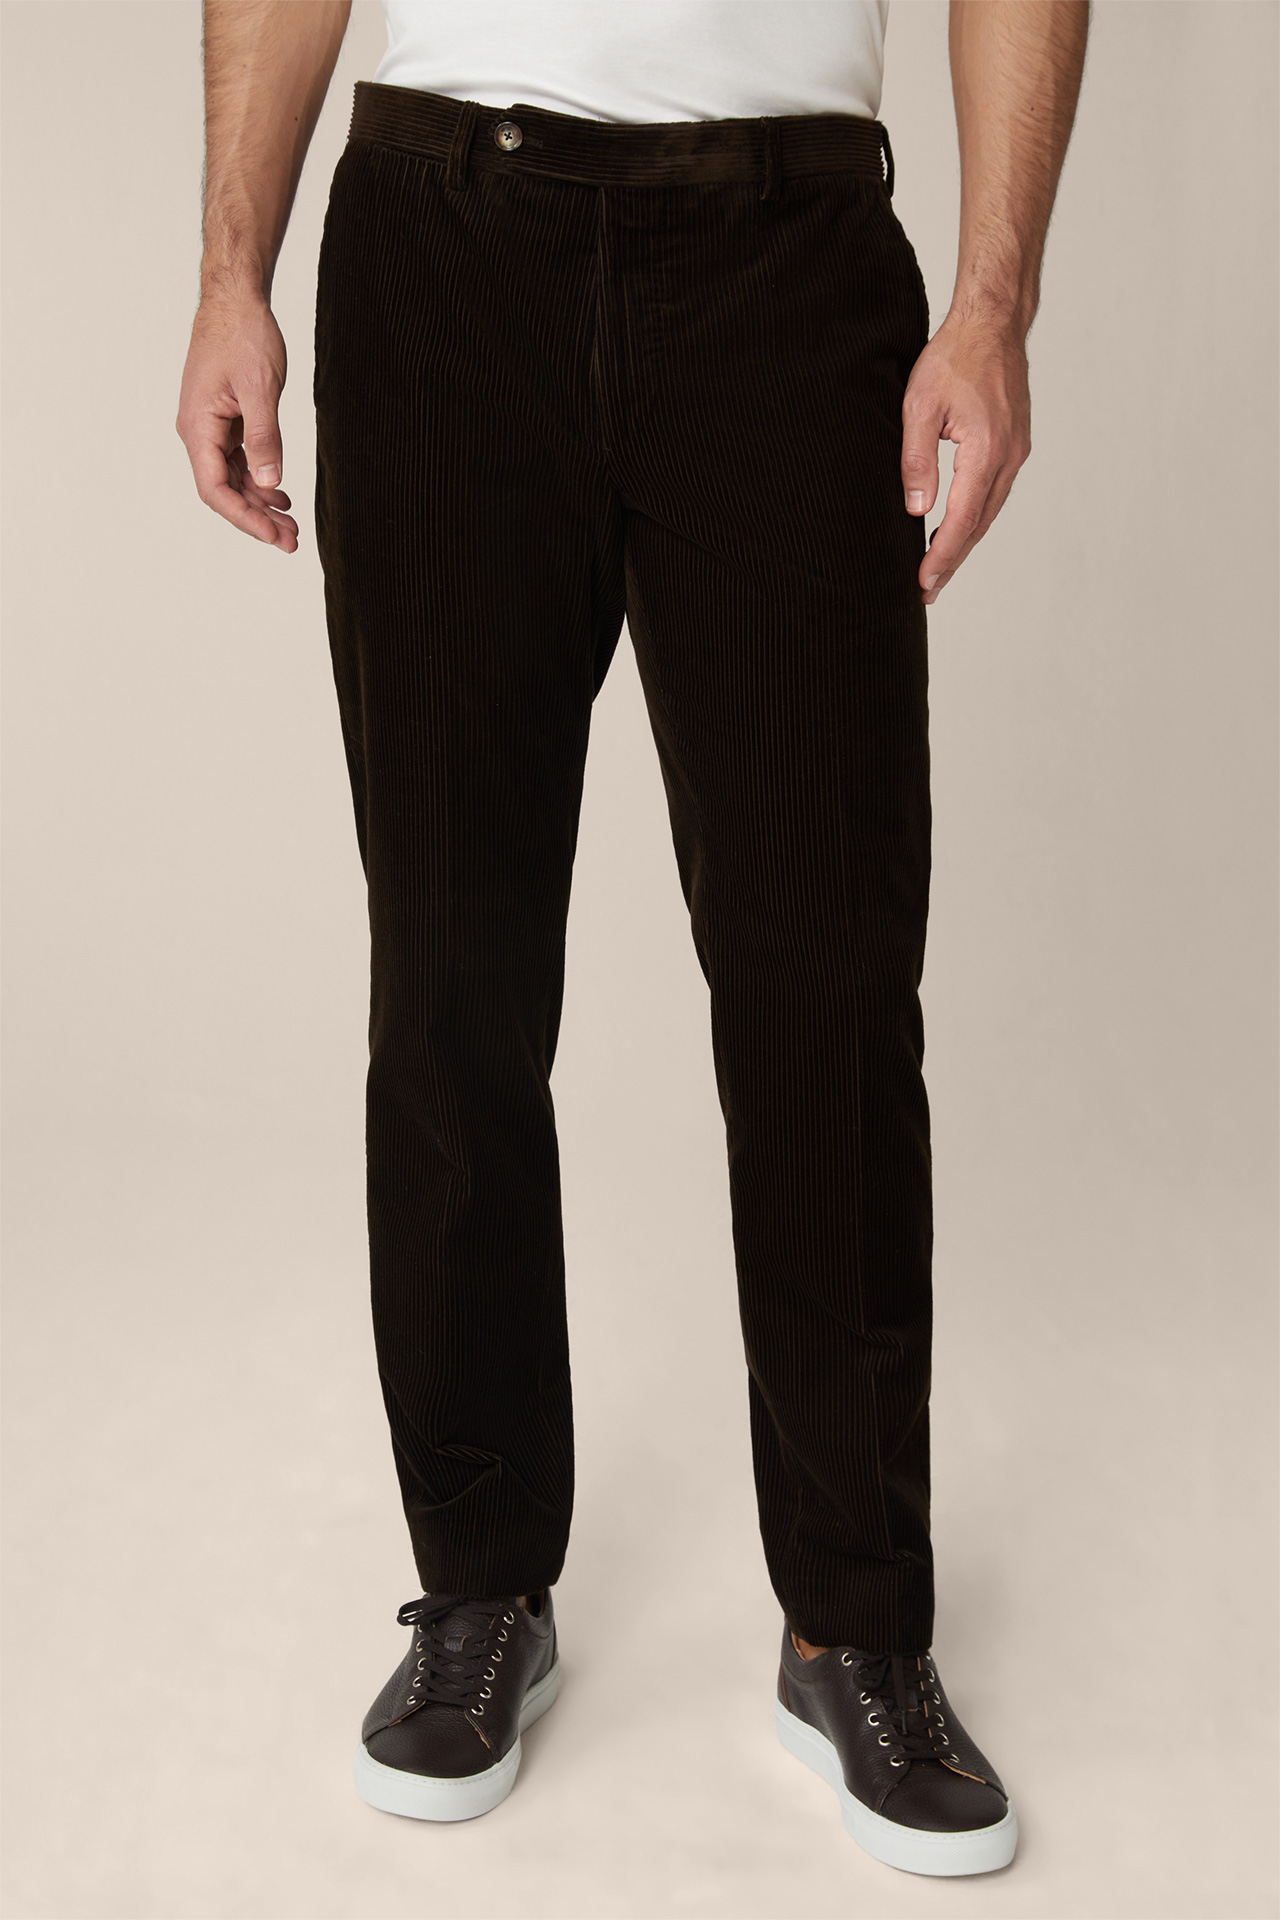 Shop Unique Second-hand Corduroy Trousers Online | Buy Trousers: Groupie